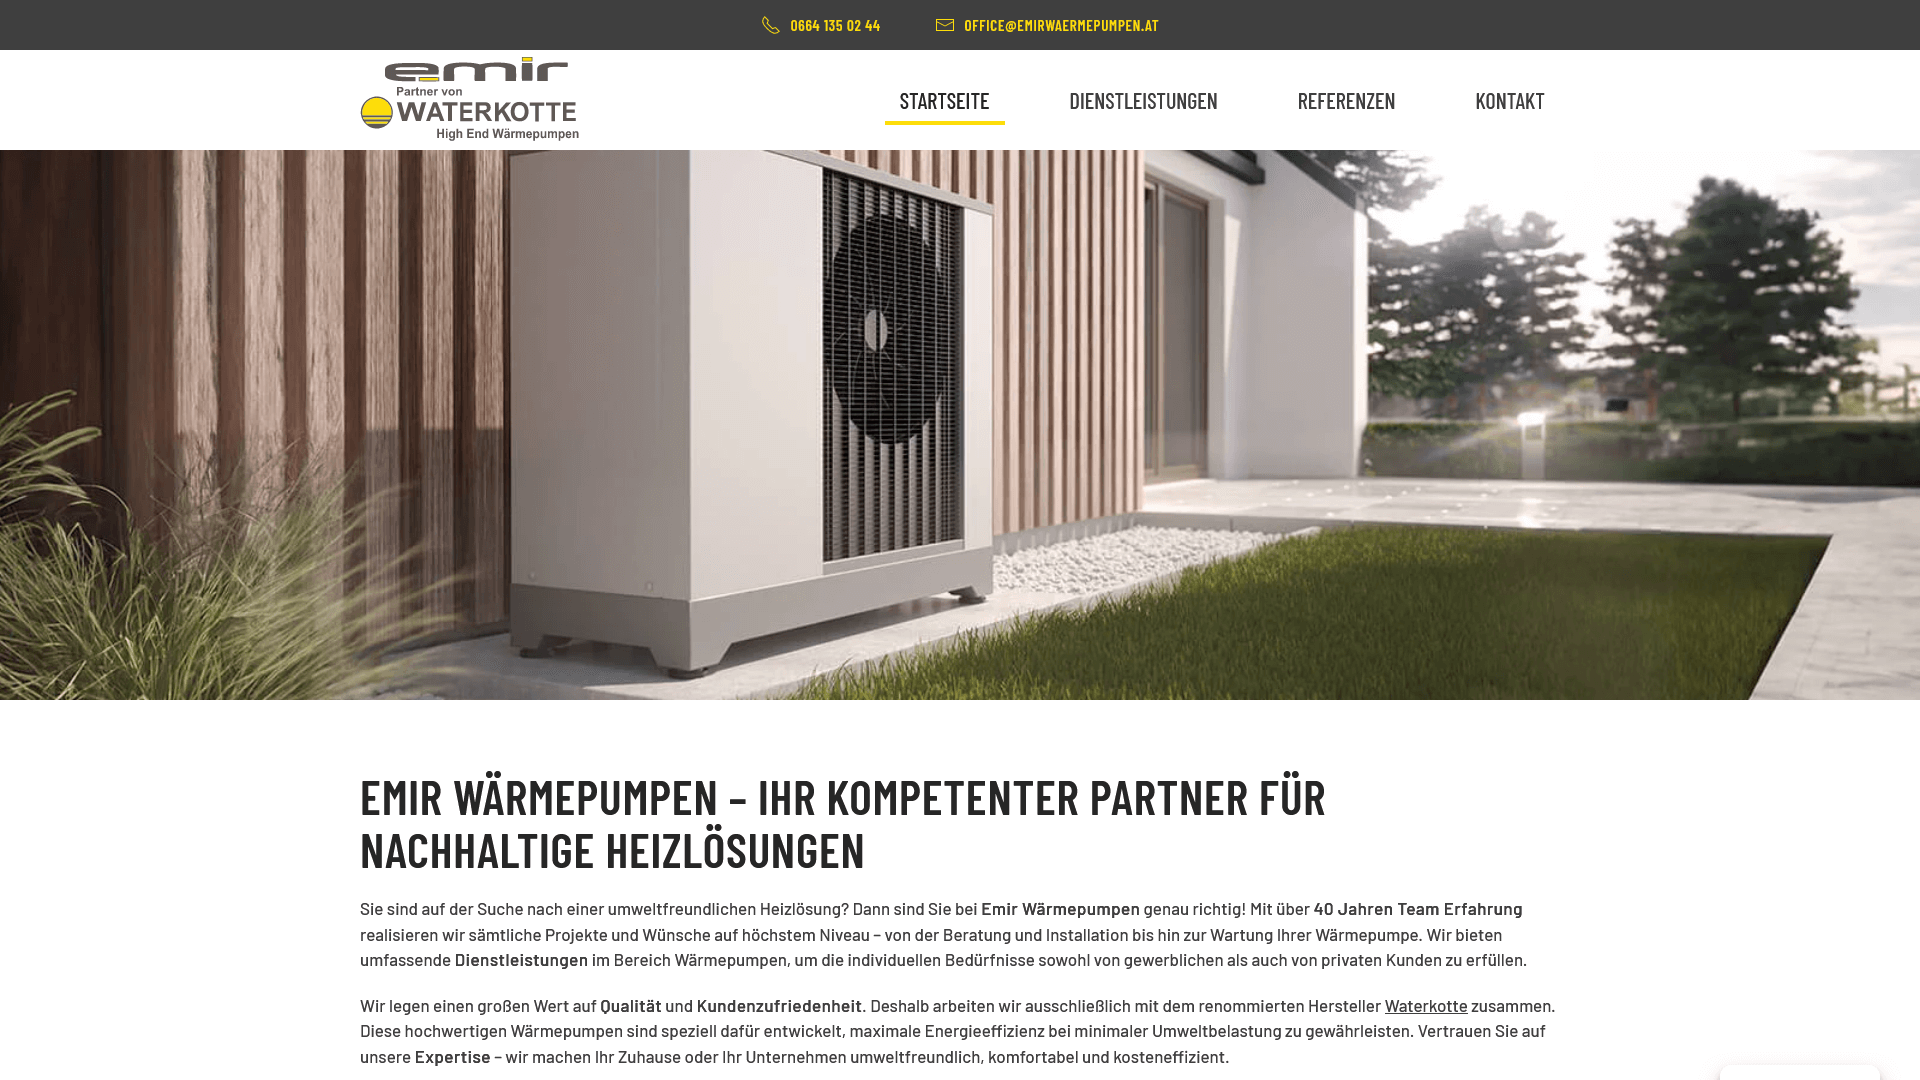 Professionelle Webseite von Emir Wärmepumpen aus Wien, die sich durch ein modernes und benutzerfreundliches Design auszeichnet und umfassende Dienstleistungen im Bereich nachhaltiger Heizlösungen bietet.